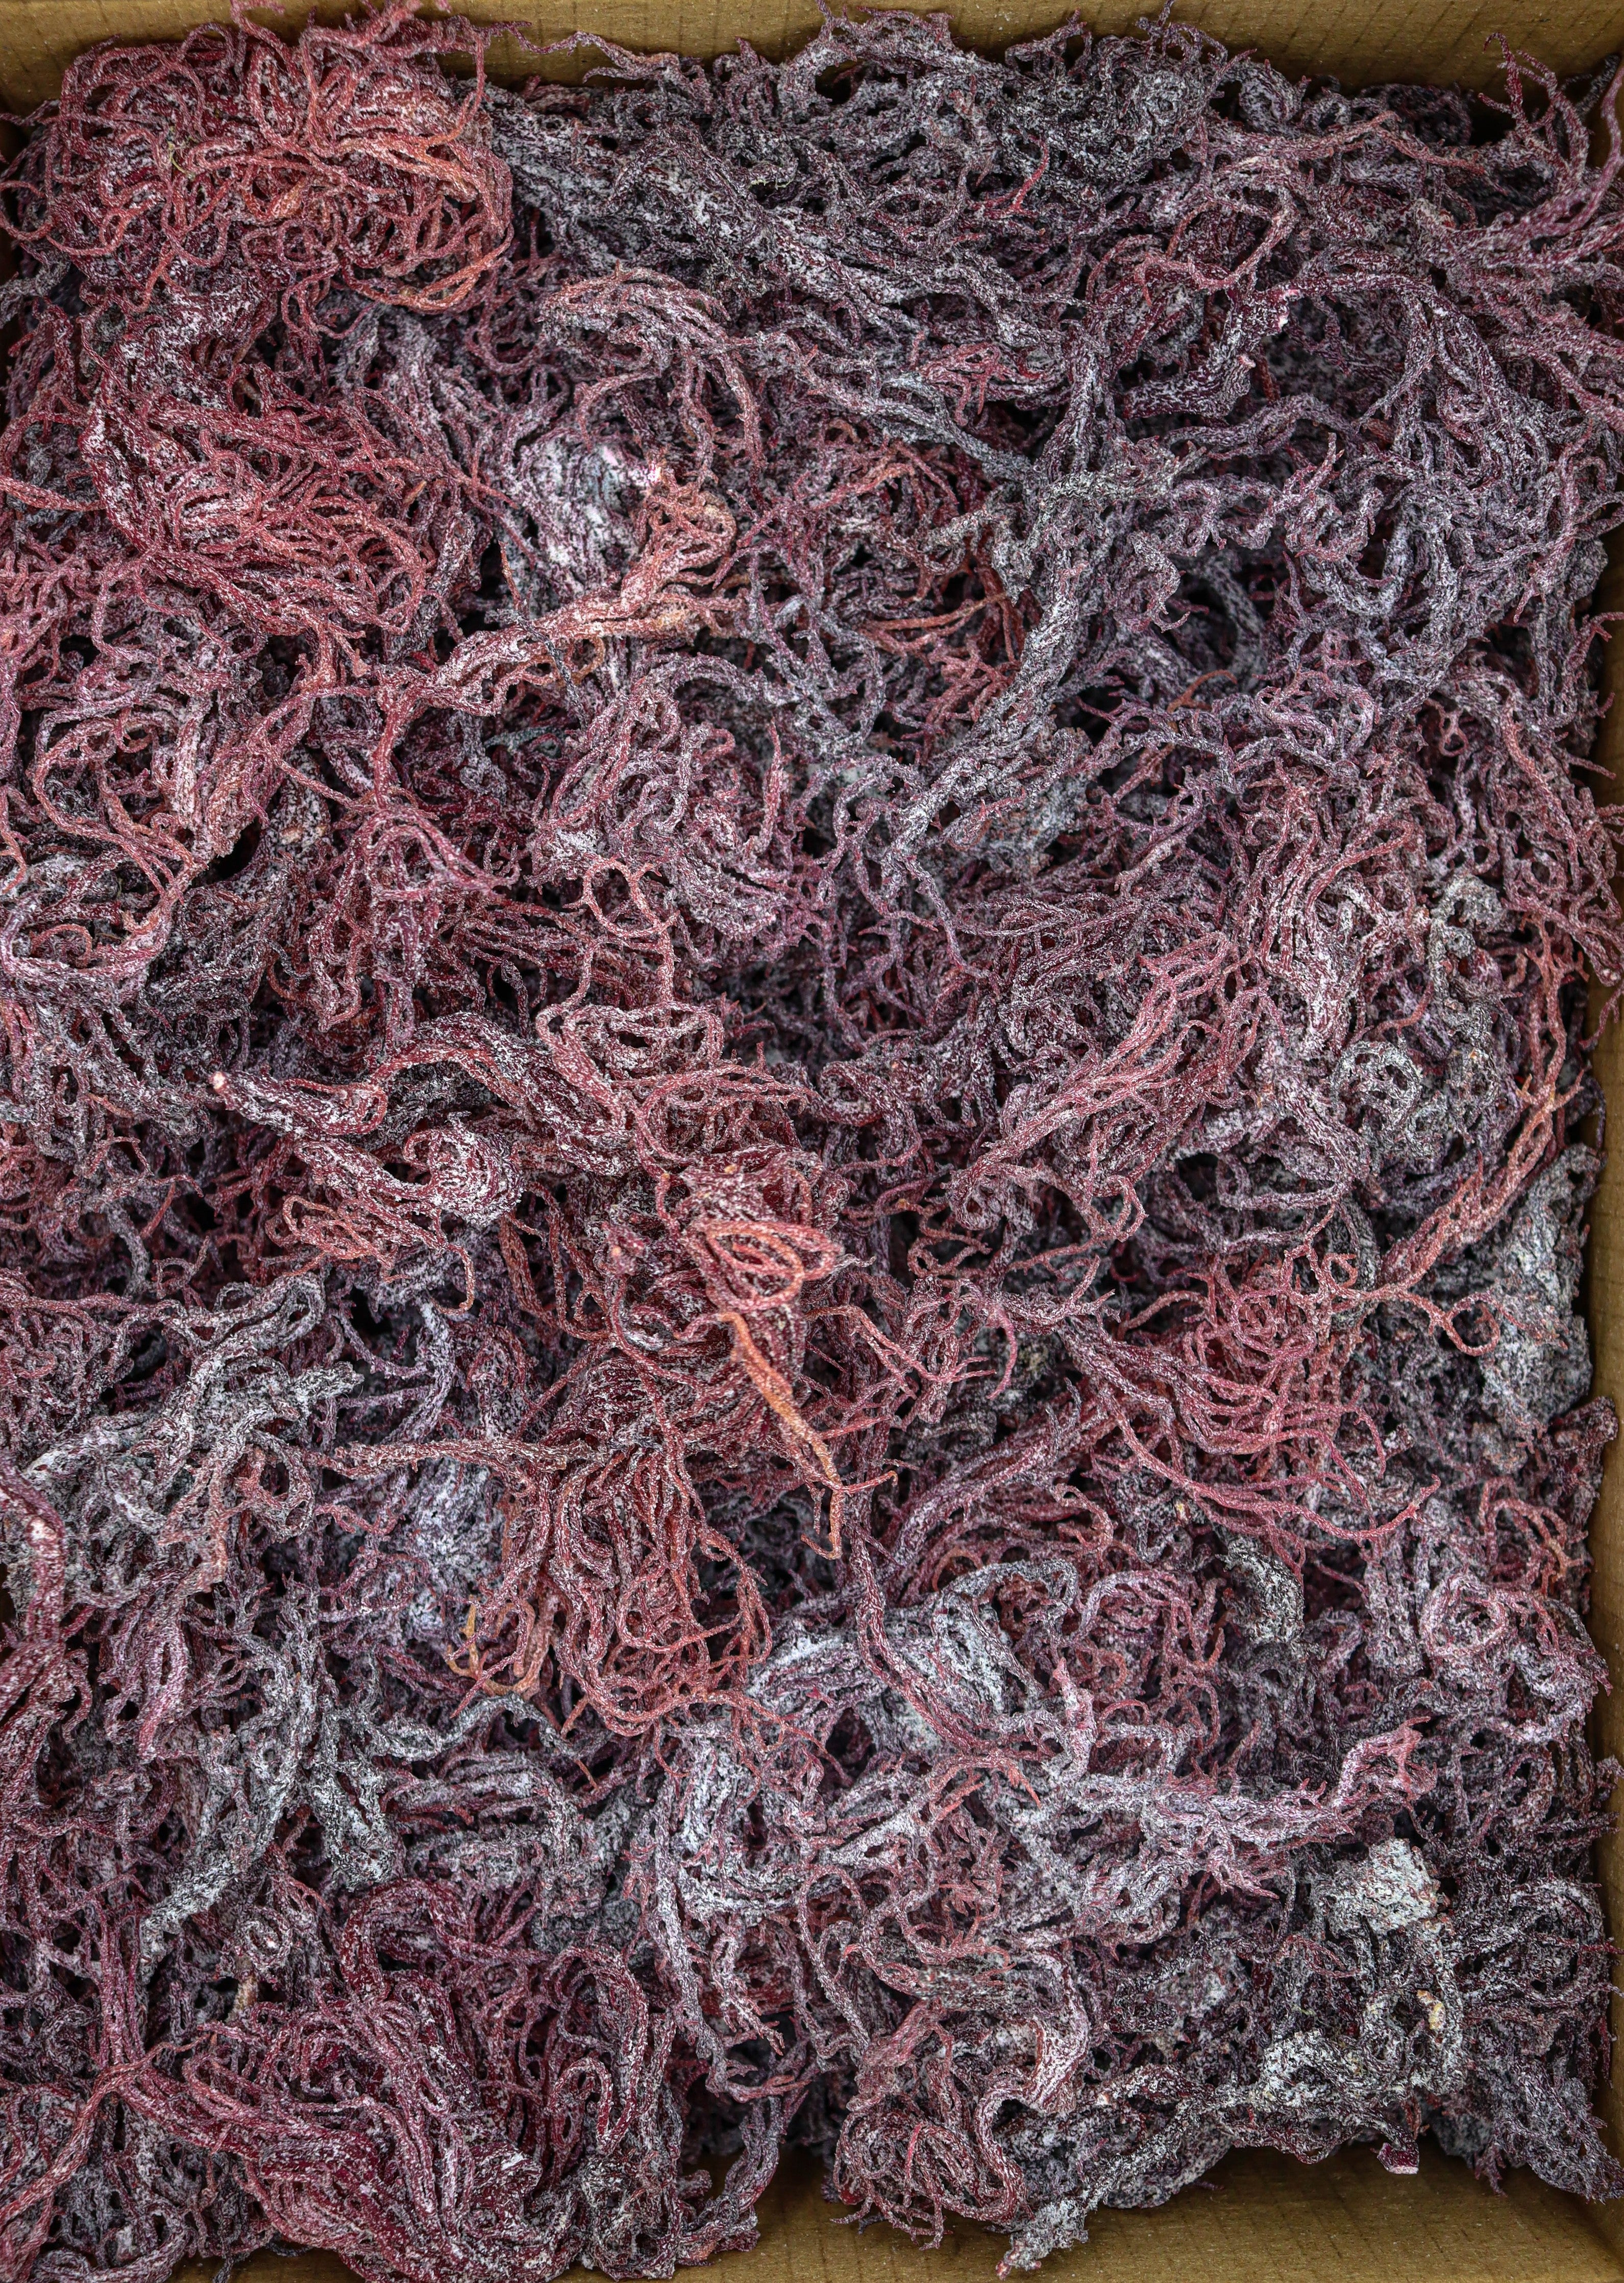 1kg Purple St Lucia Sea Moss - Gracilaria - St Lucia Sea Moss Organic Buy UK 